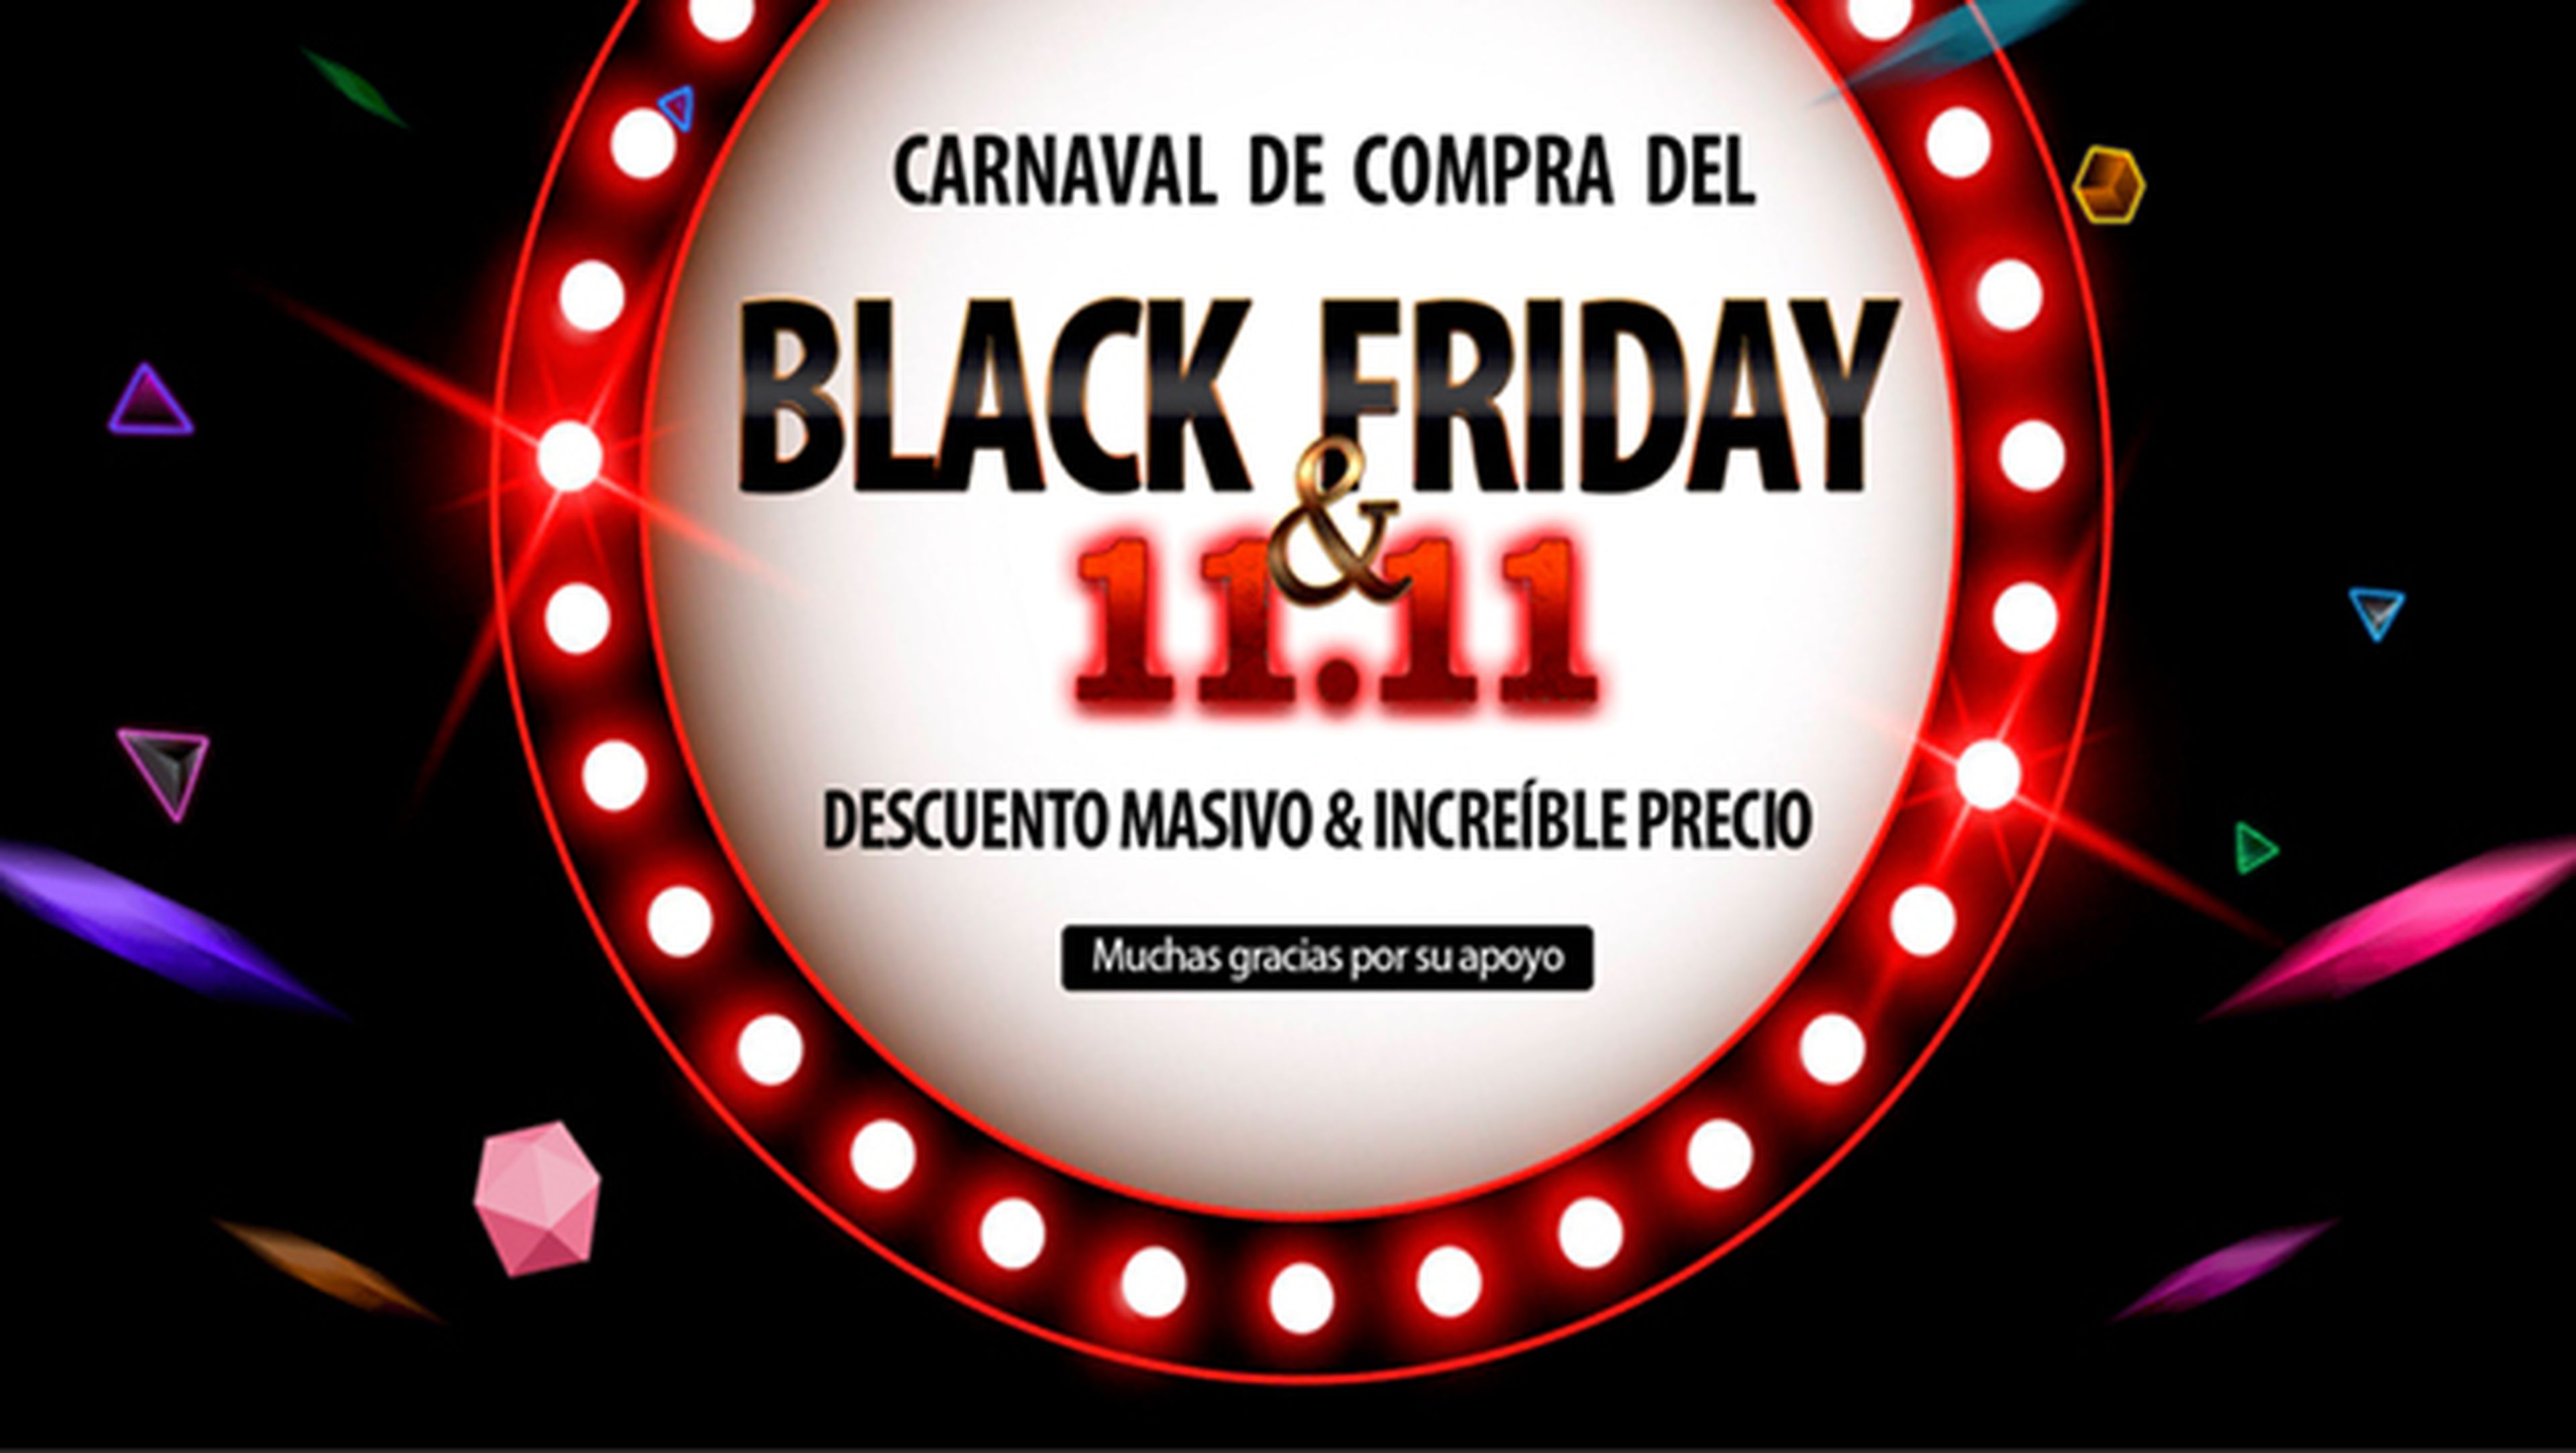 Igogo prepara un carnaval para el Black Friday